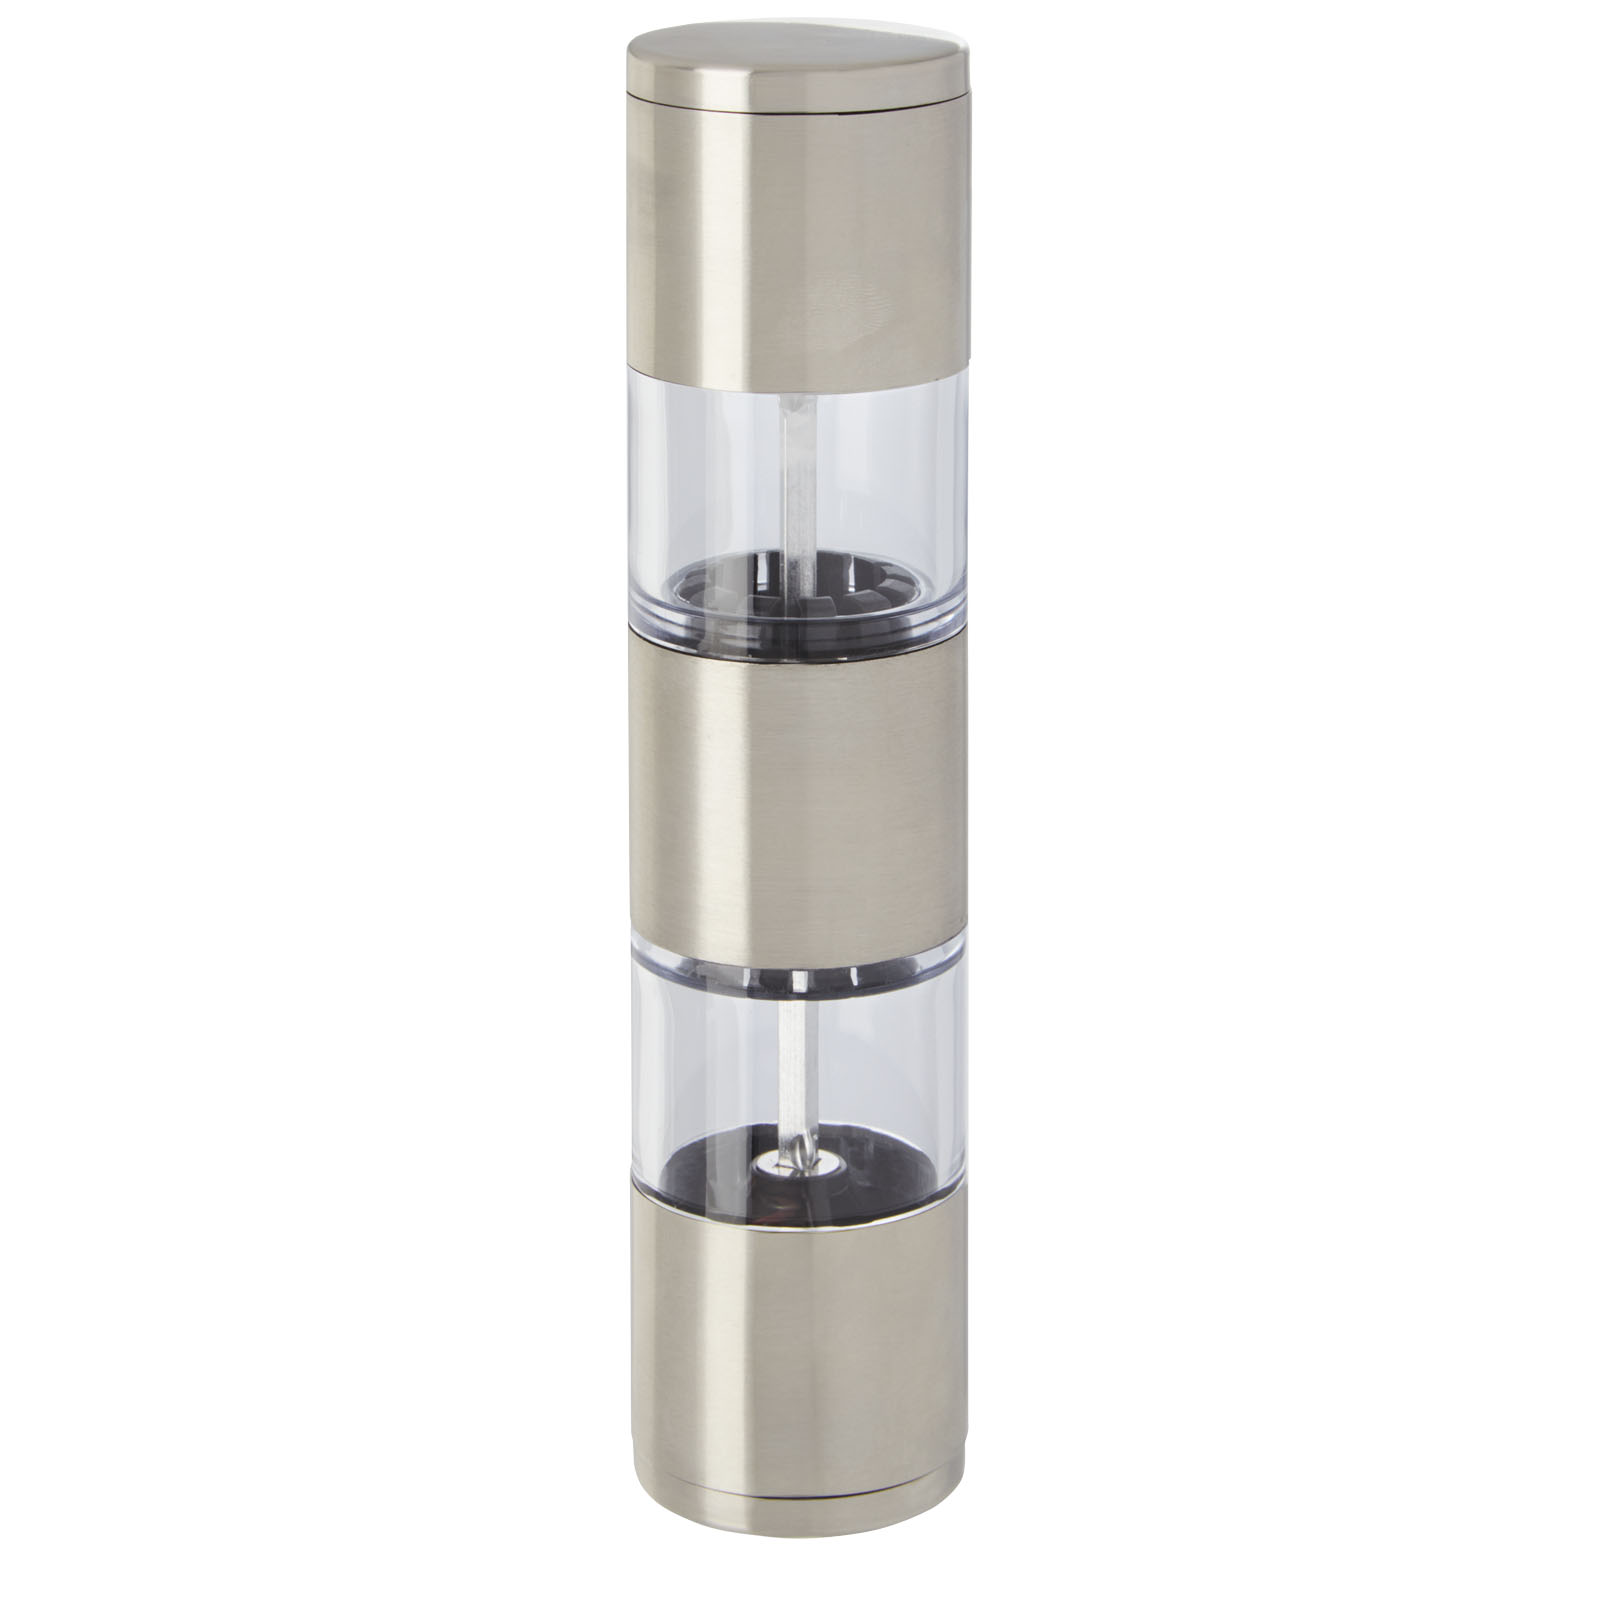 Advertising Kitchenware - Auro salt and pepper grinder - 3